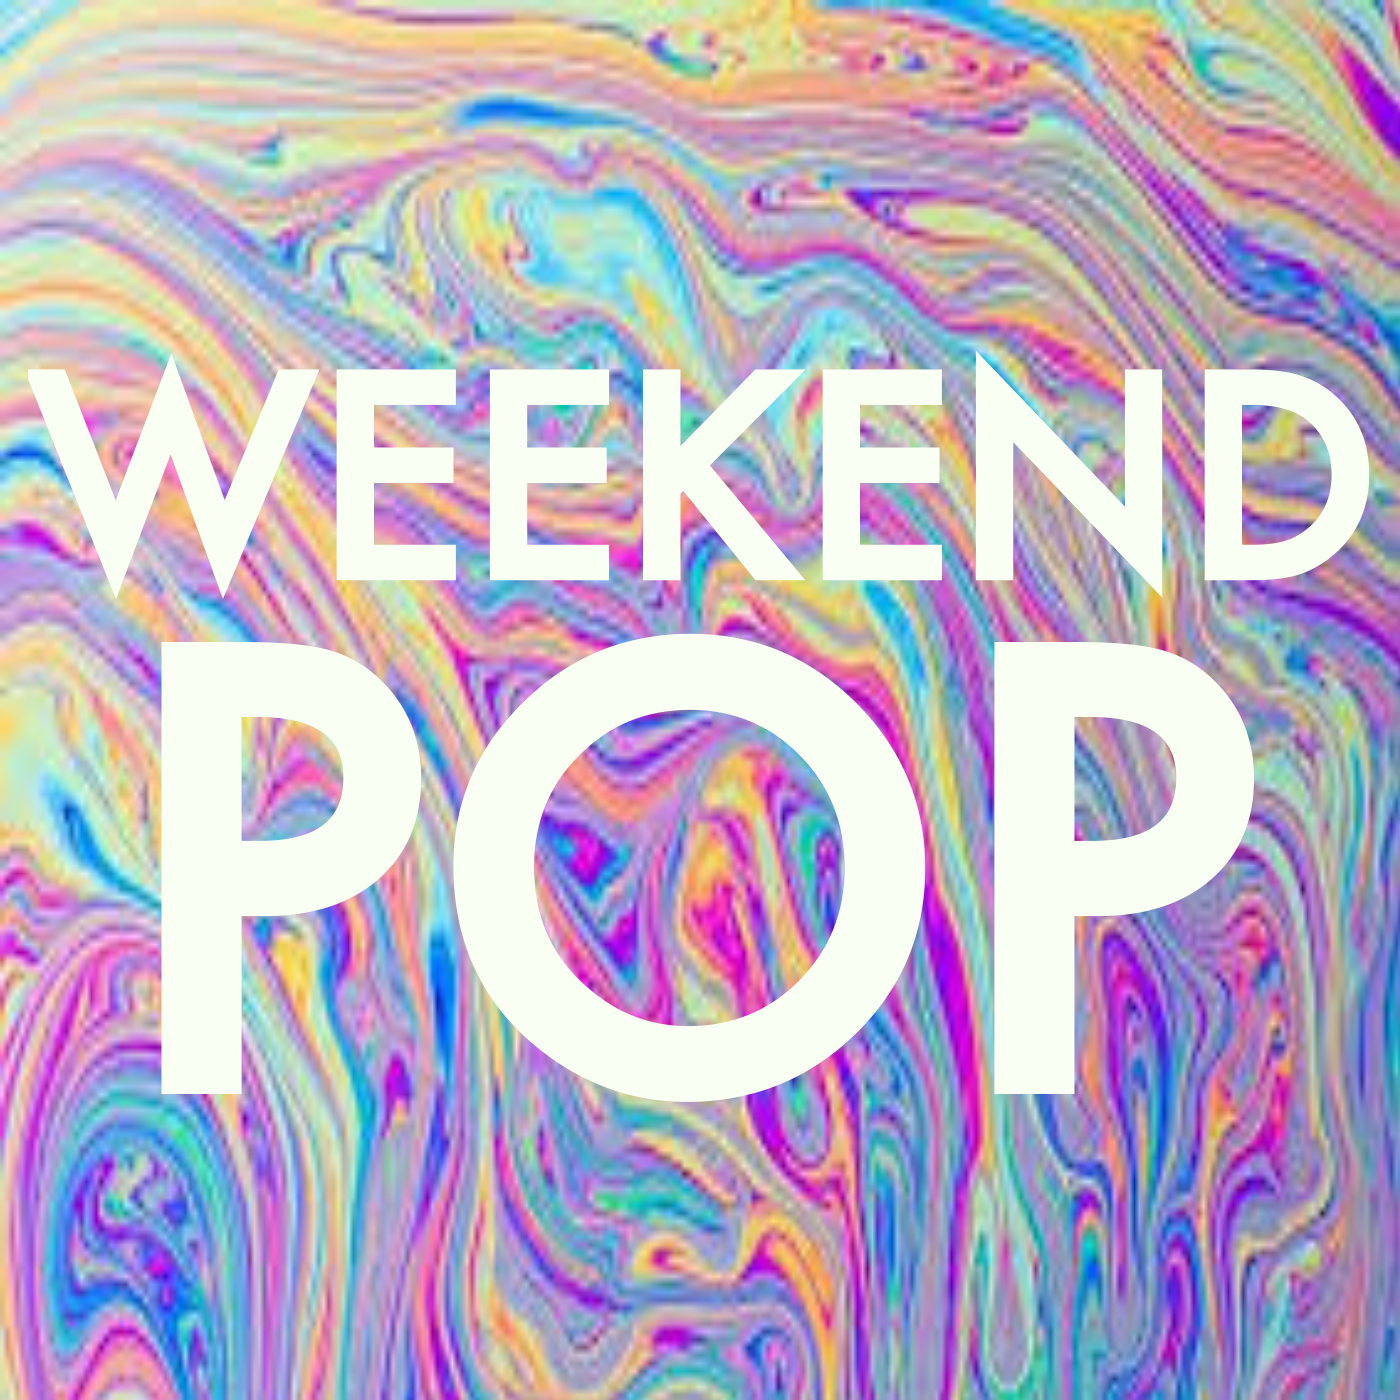 Weekend Pop